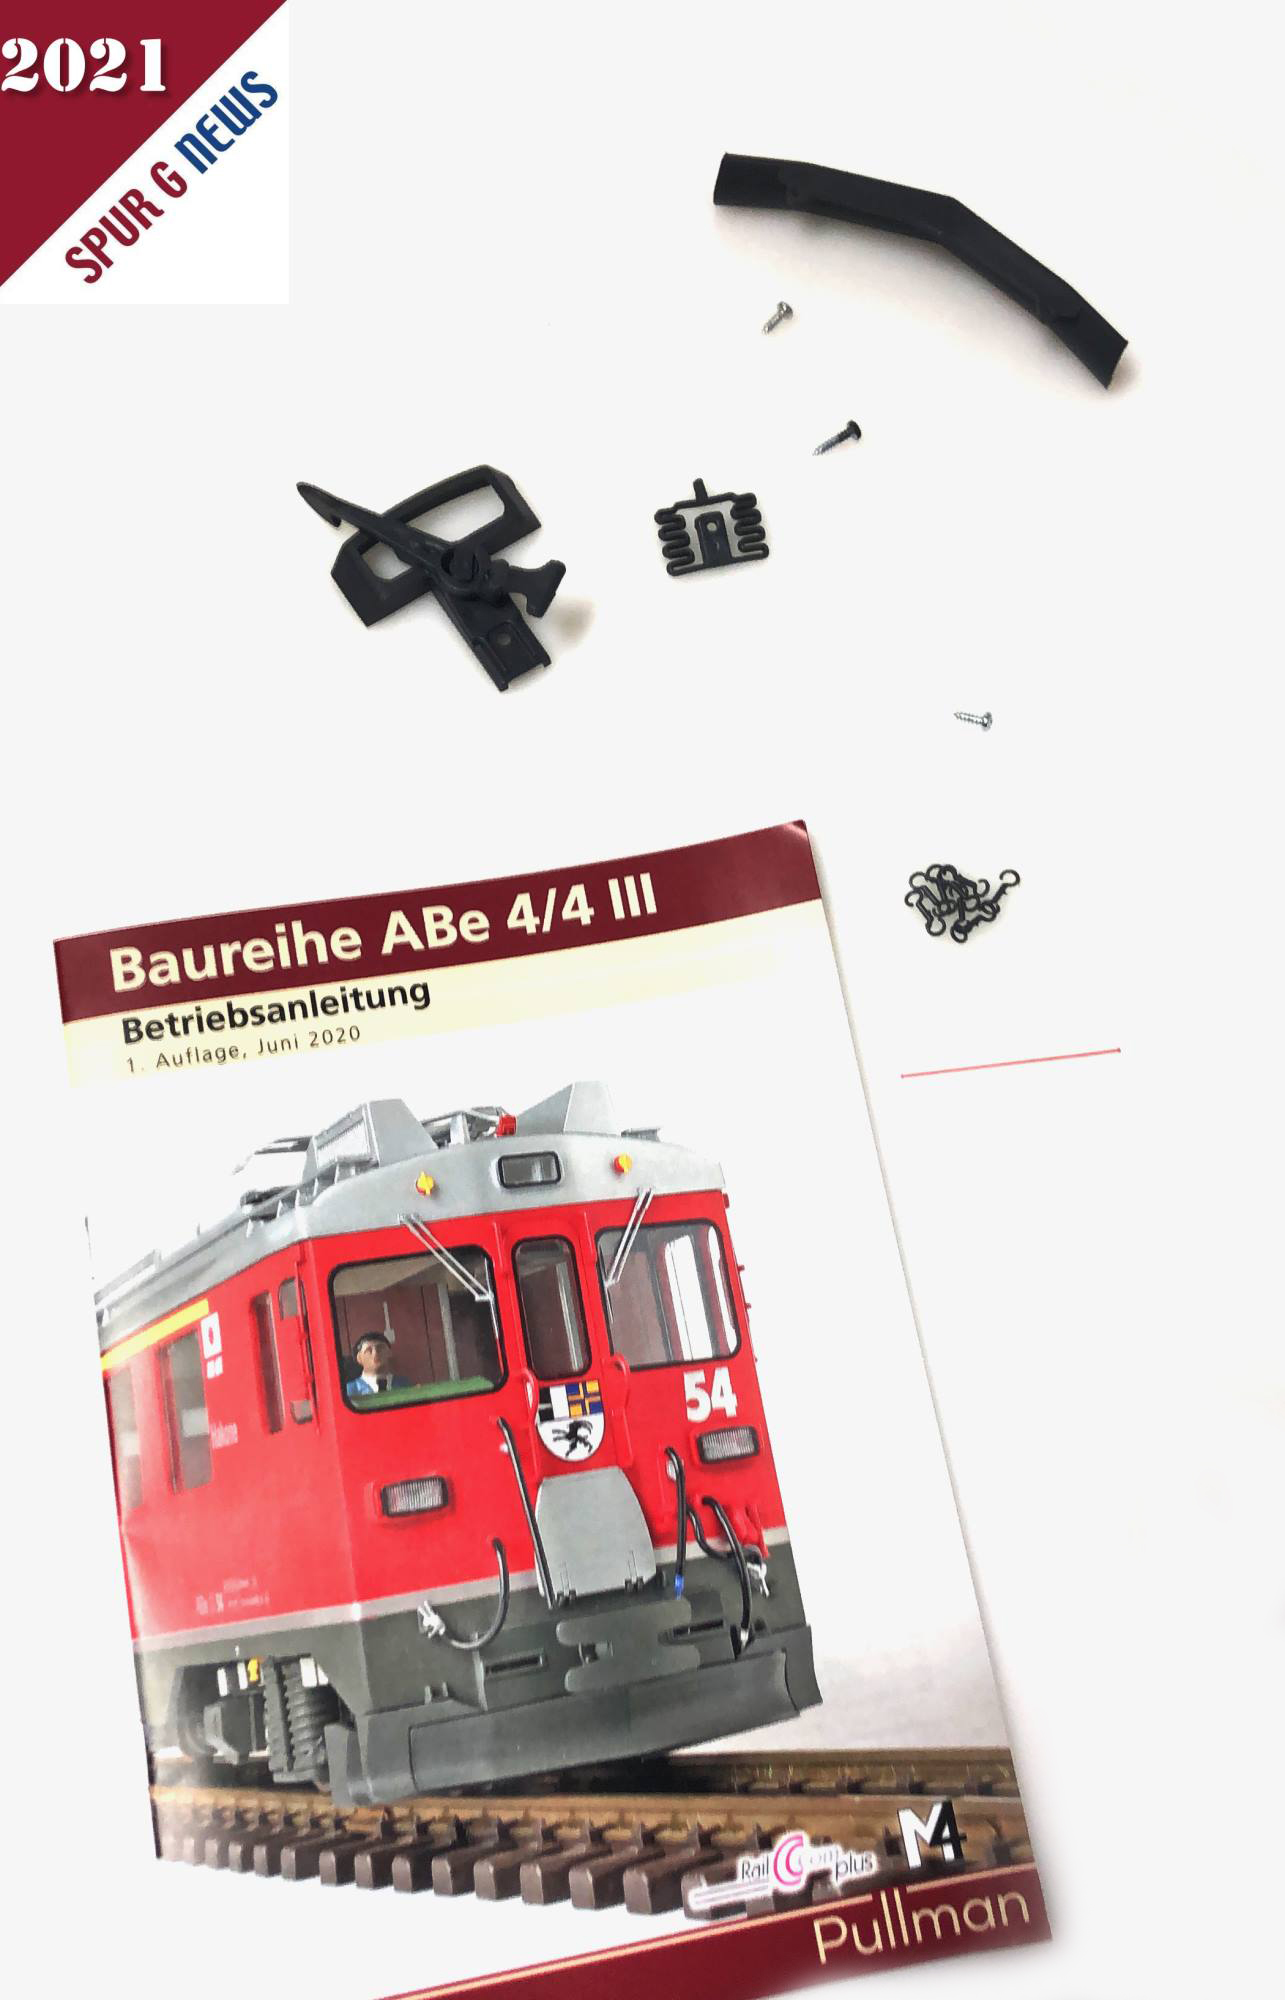 Beilage zum Triebwagen ABe 4/4 III: Bedienungsanleitung mit Zubehrteilen wie Kupplung mit Schrauben, Schienenrumer und kleinen Haken. 